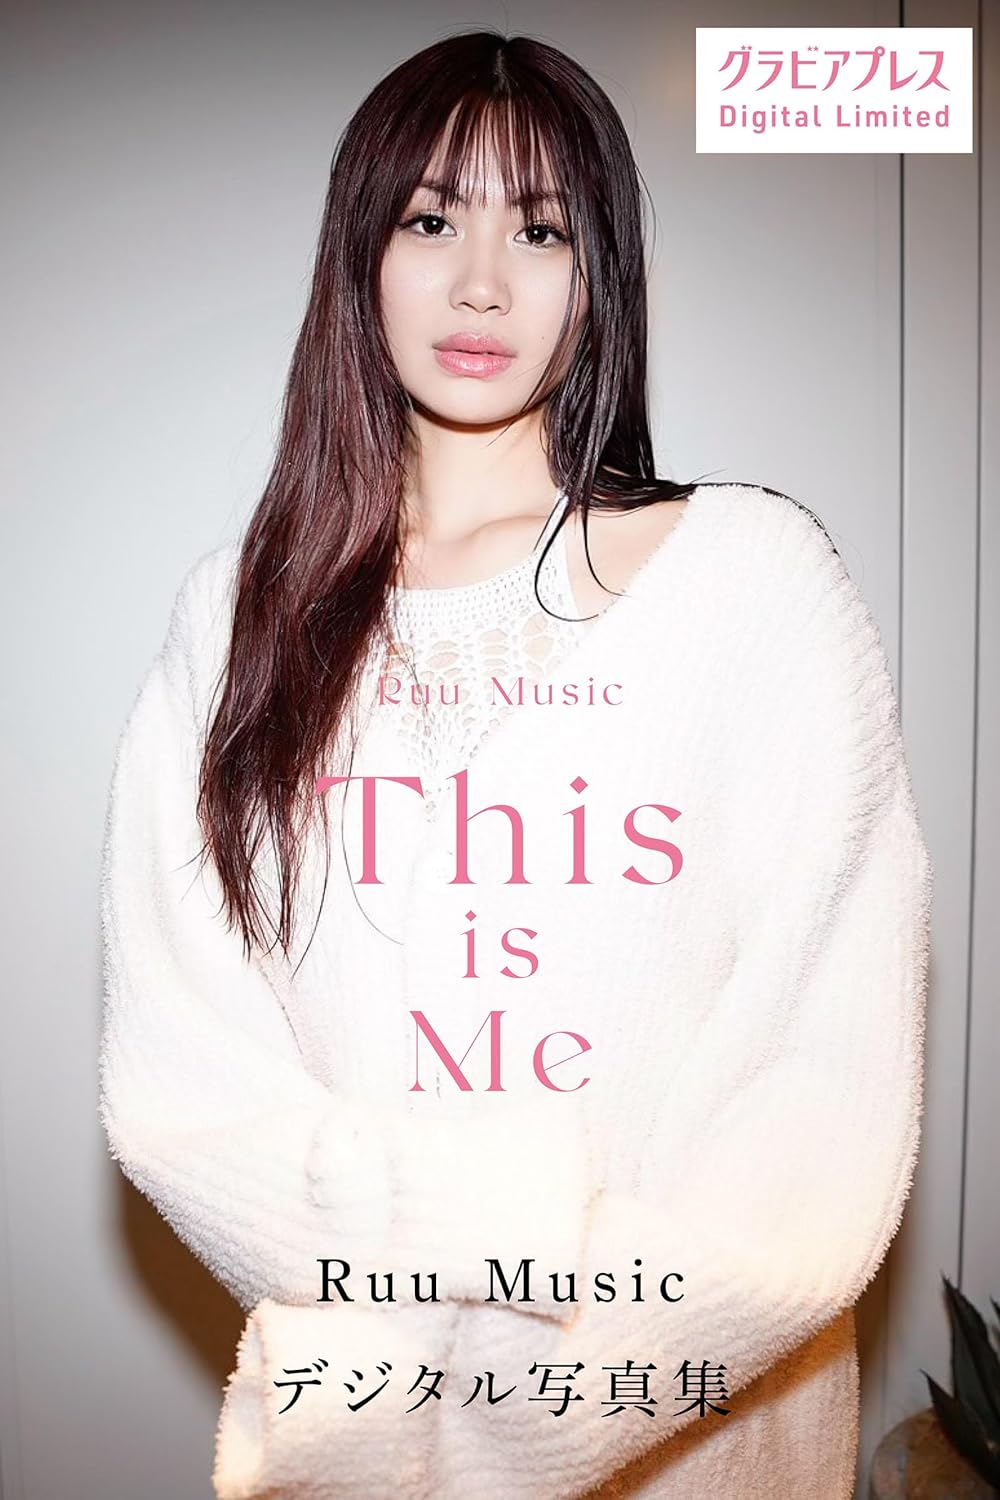 Ruu Music 「This is Me」 グラビアプレス デジタル写真集 Kindle版のサンプル画像